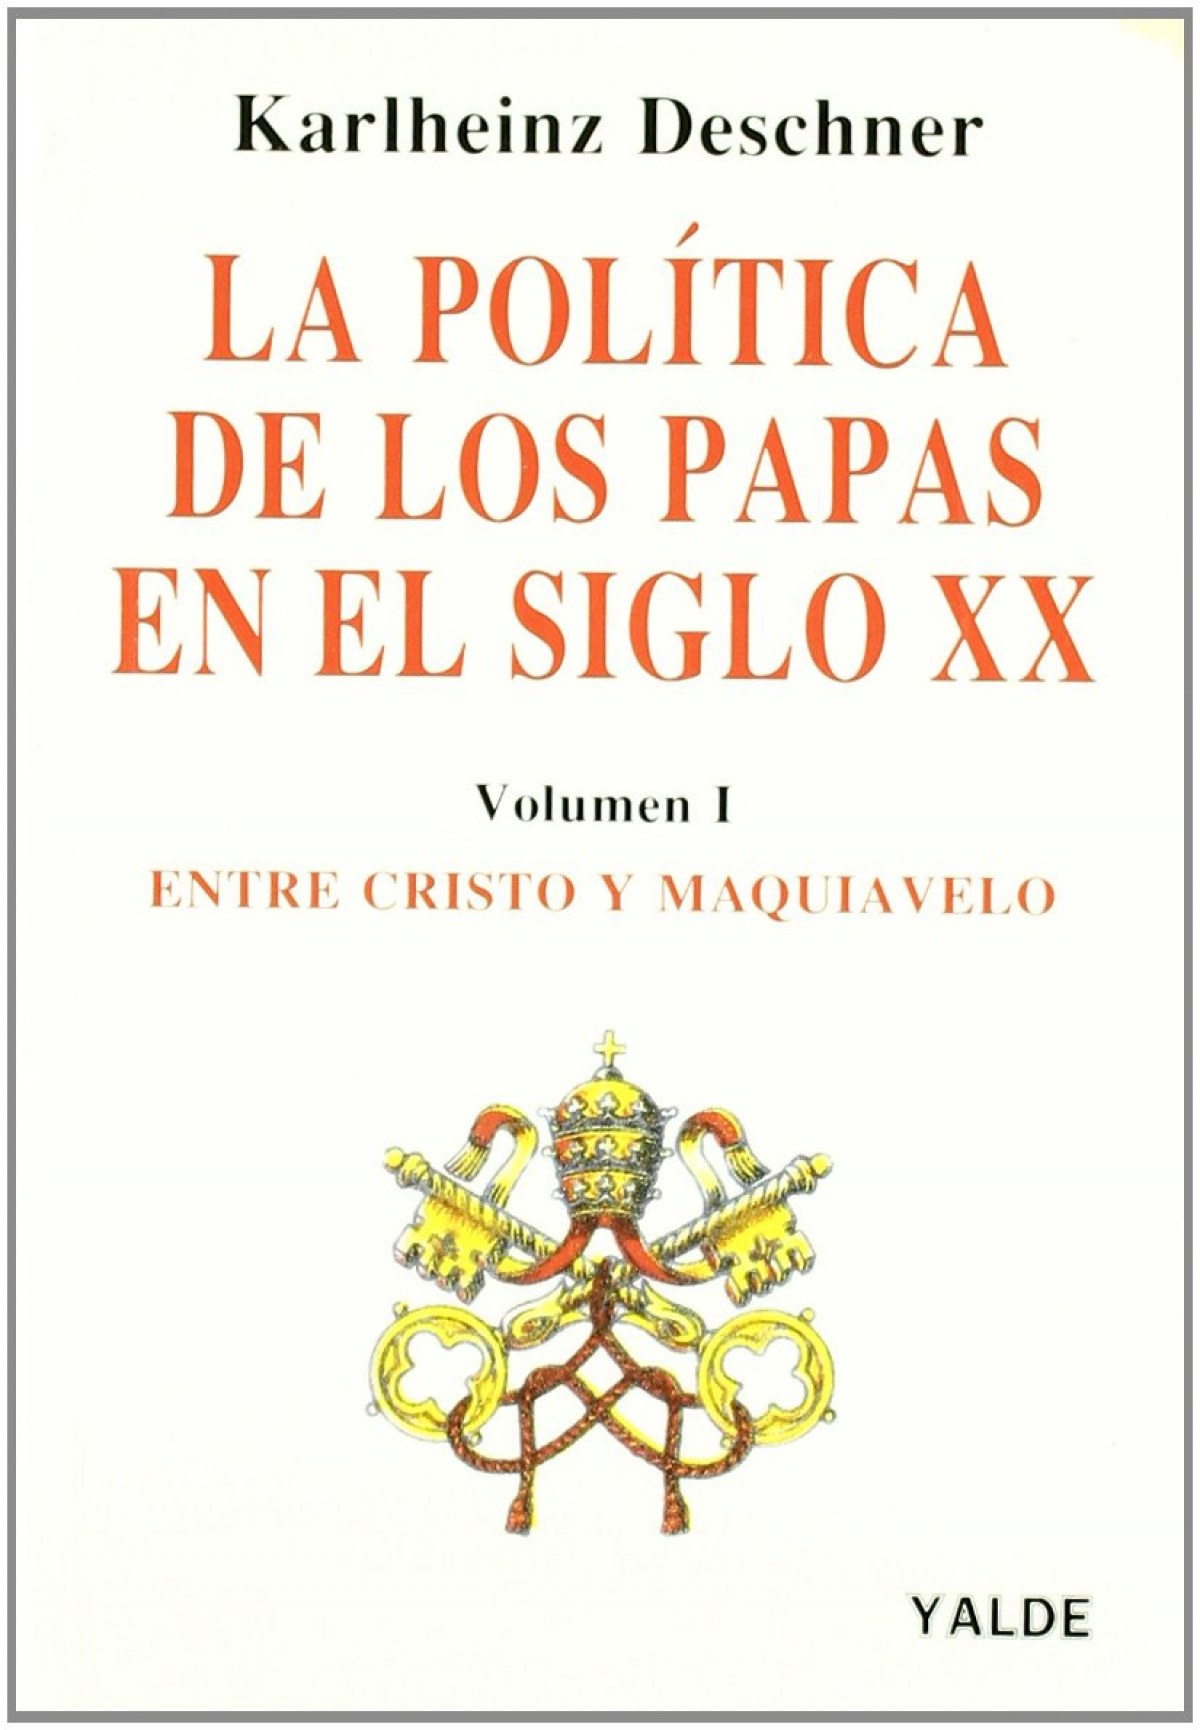 La política de los Papas - Karlheinz Deschner